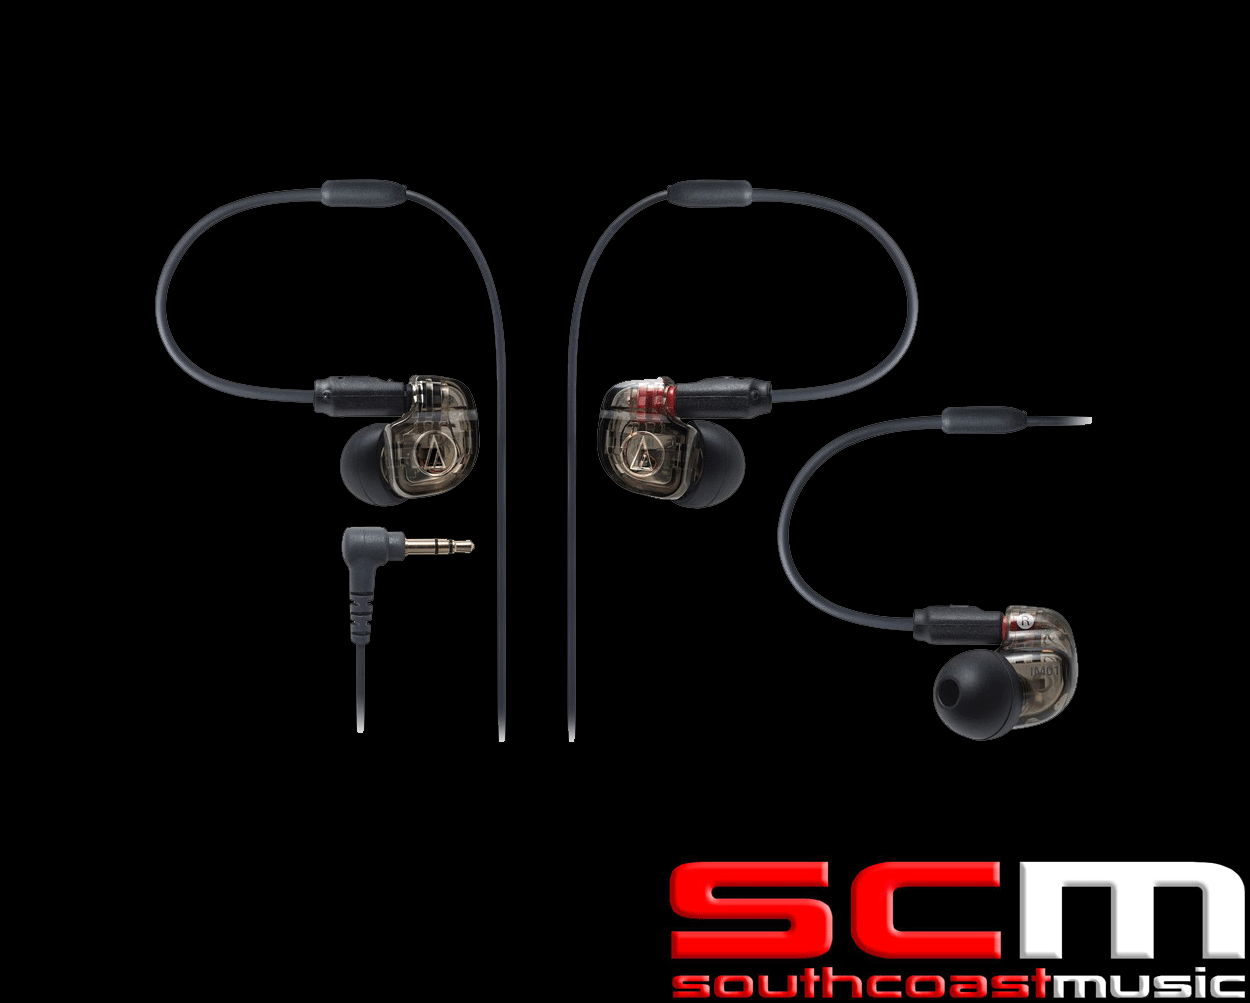 AT Audio-Technica Audio Technica ATH-IM01 Single balanced armature in-ear monitors